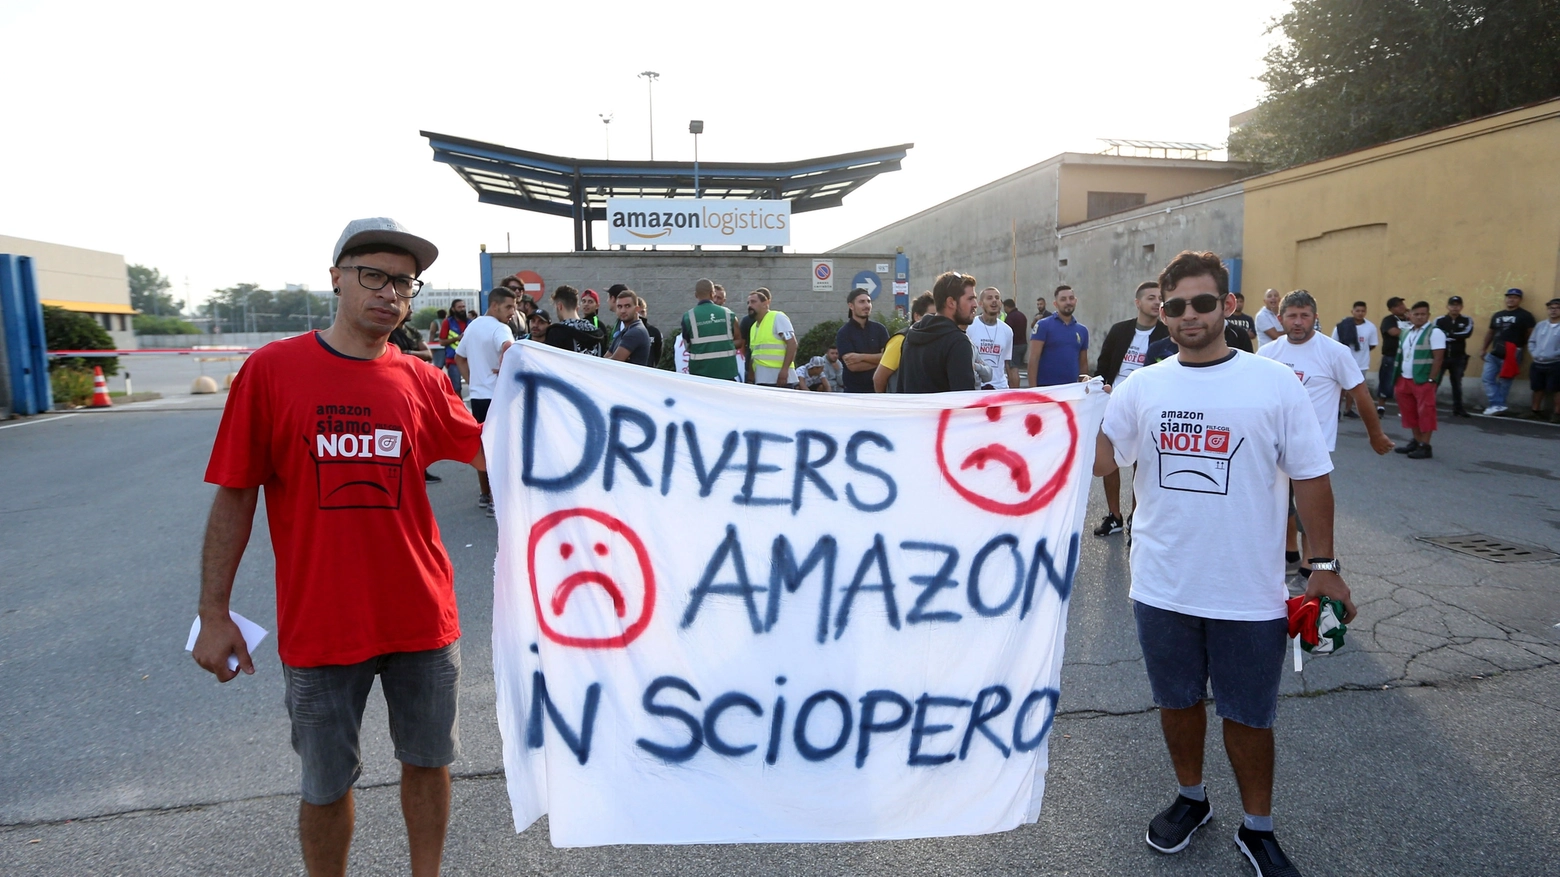 Amazon in sciopero